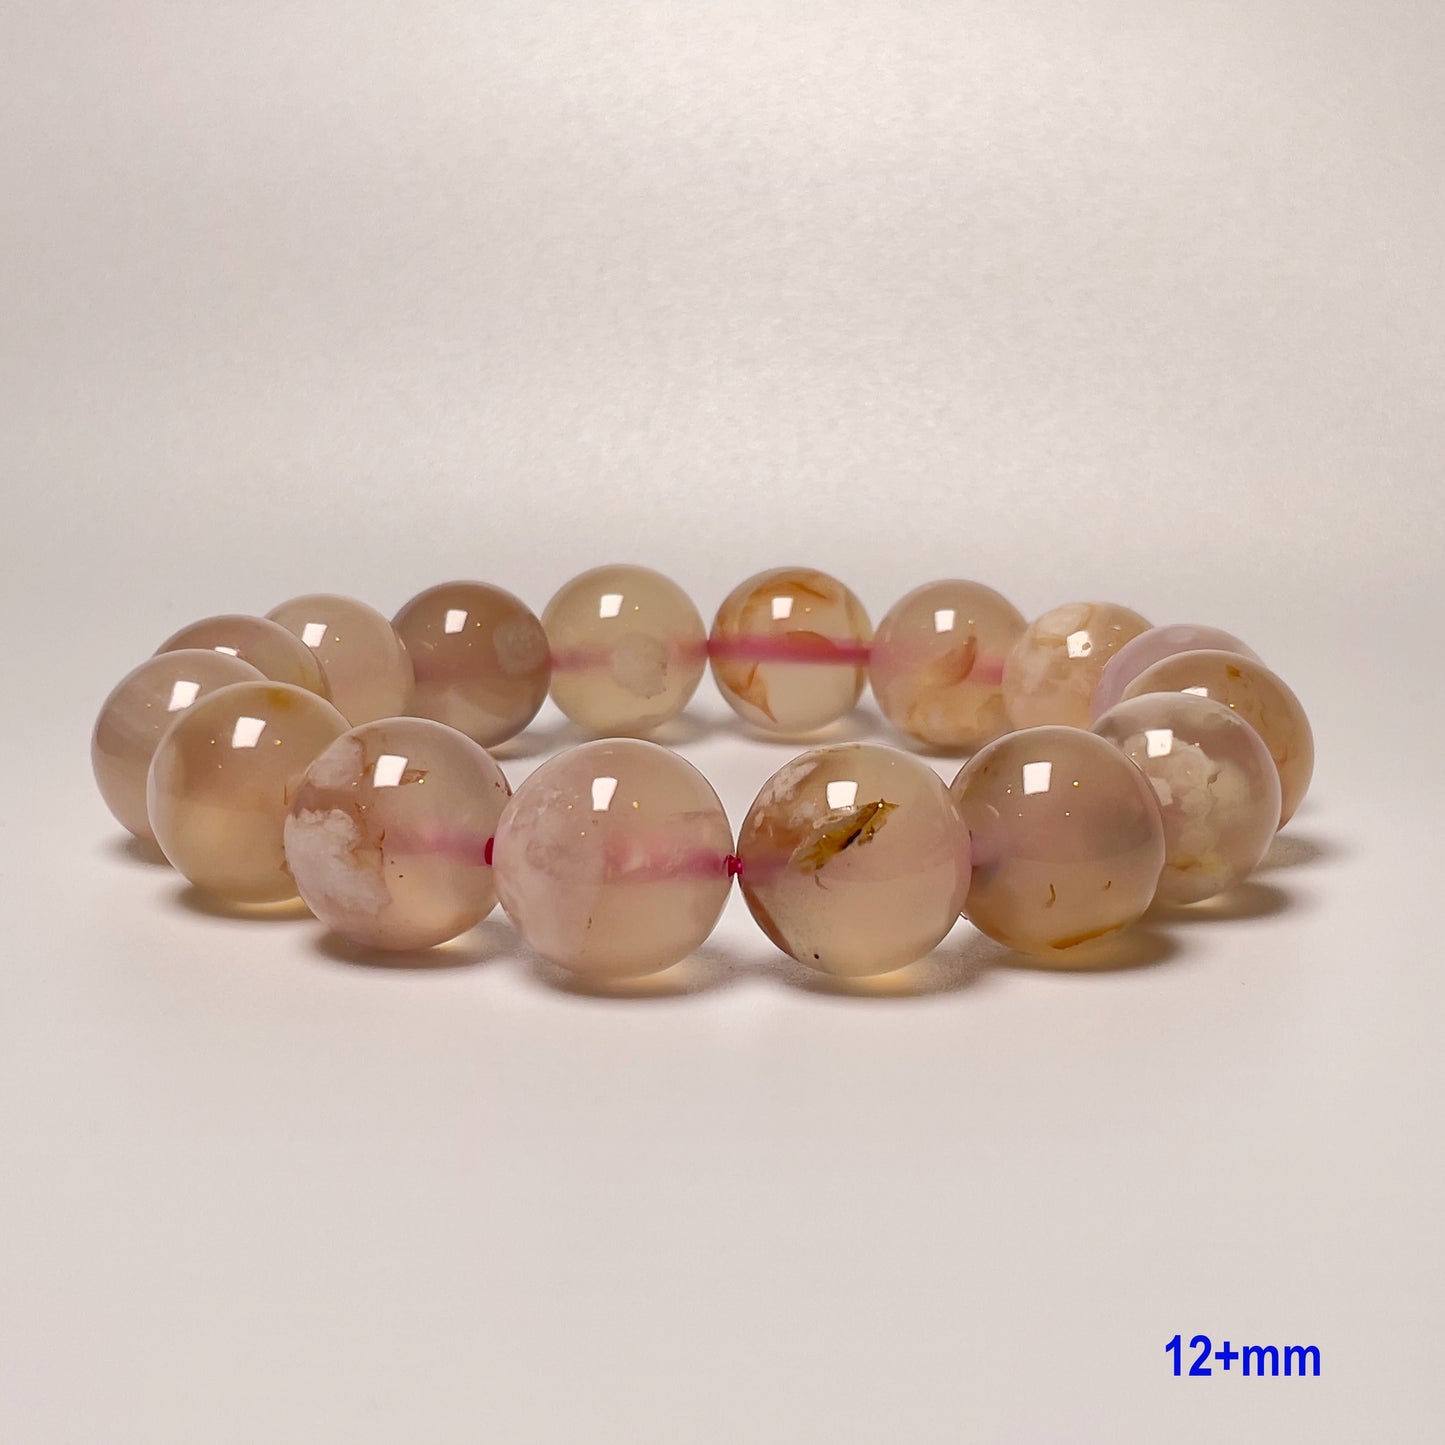 Stonelry Natural Sakura (Cherry Blossom) Agate Beaded Bracelet (9 to 12+mm)